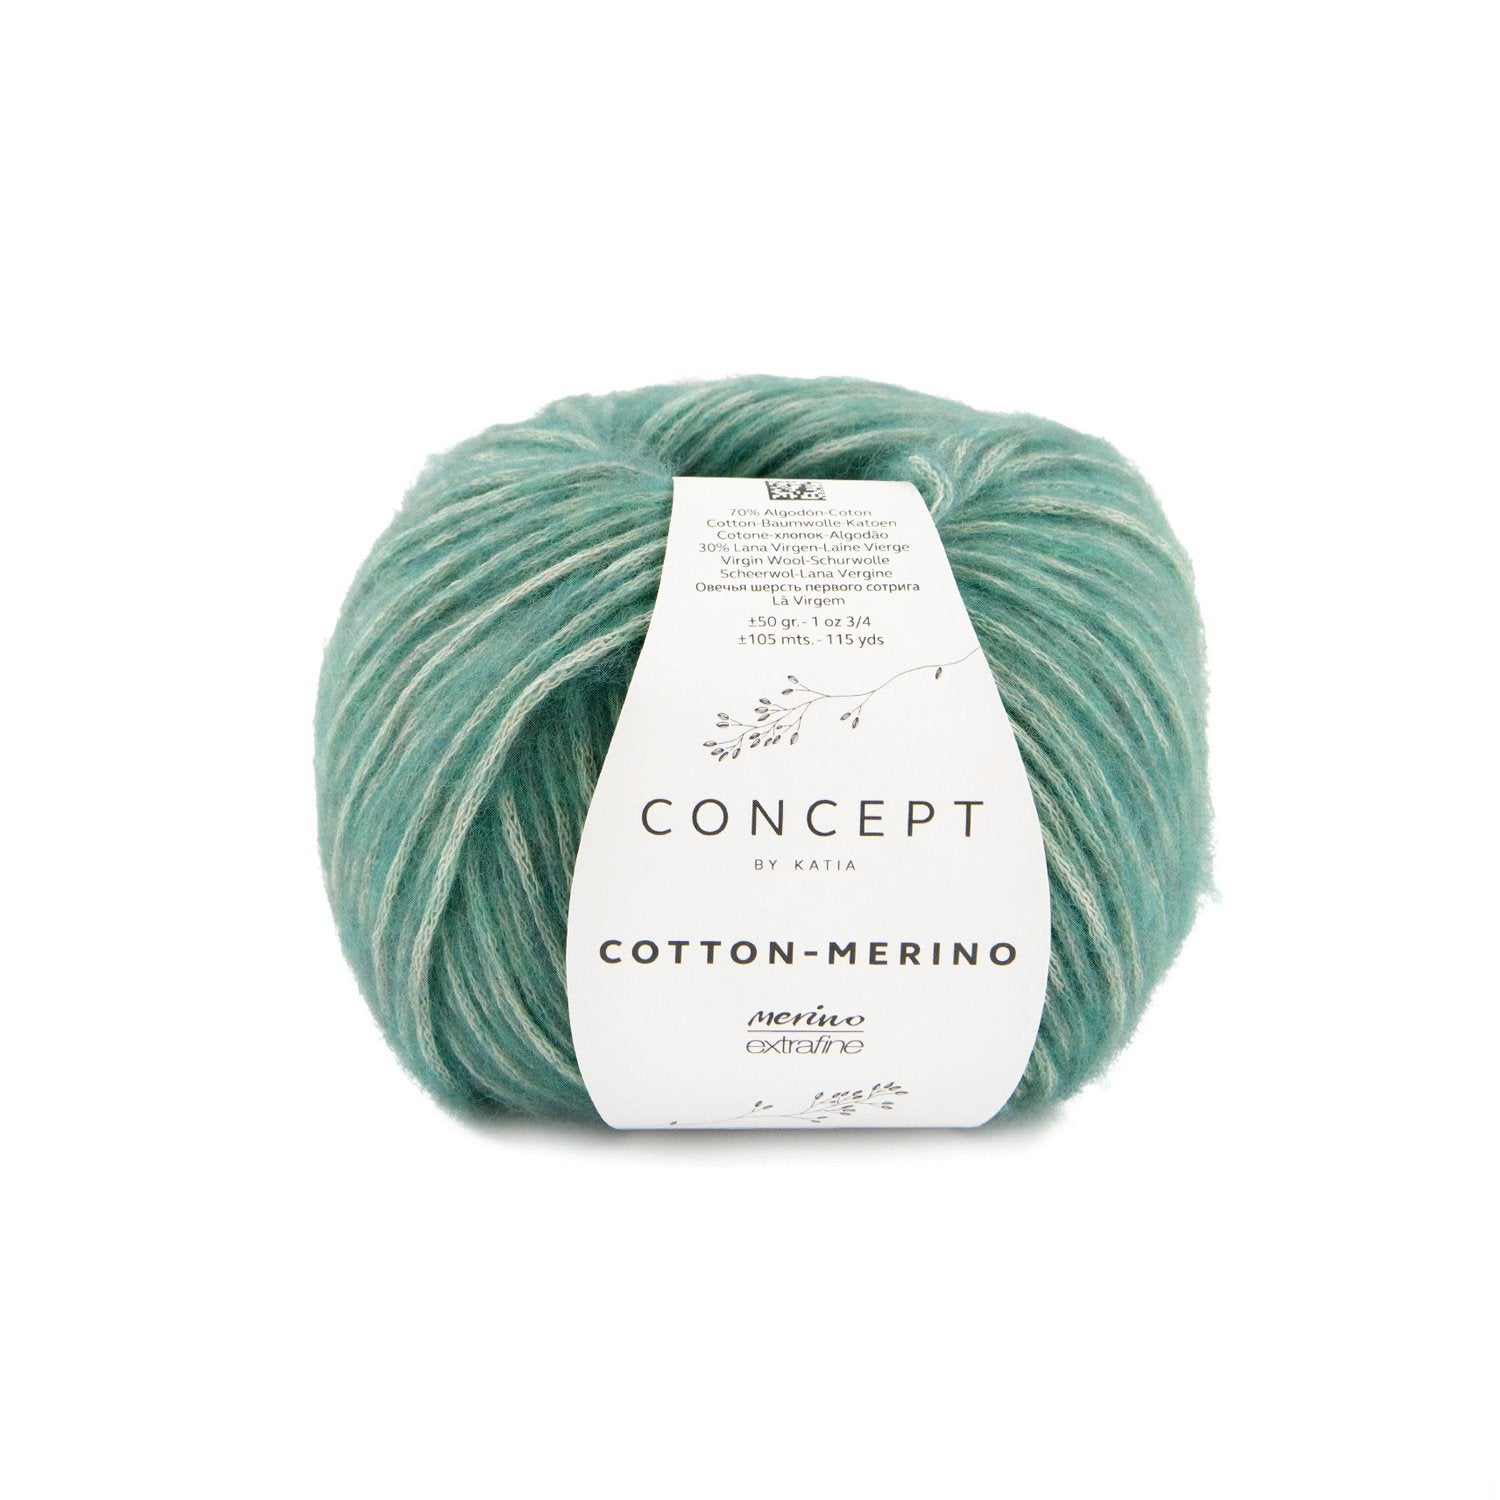 London Beanie Crochet Kit - Justine Walley - 140 Emerald - The Little Yarn Store